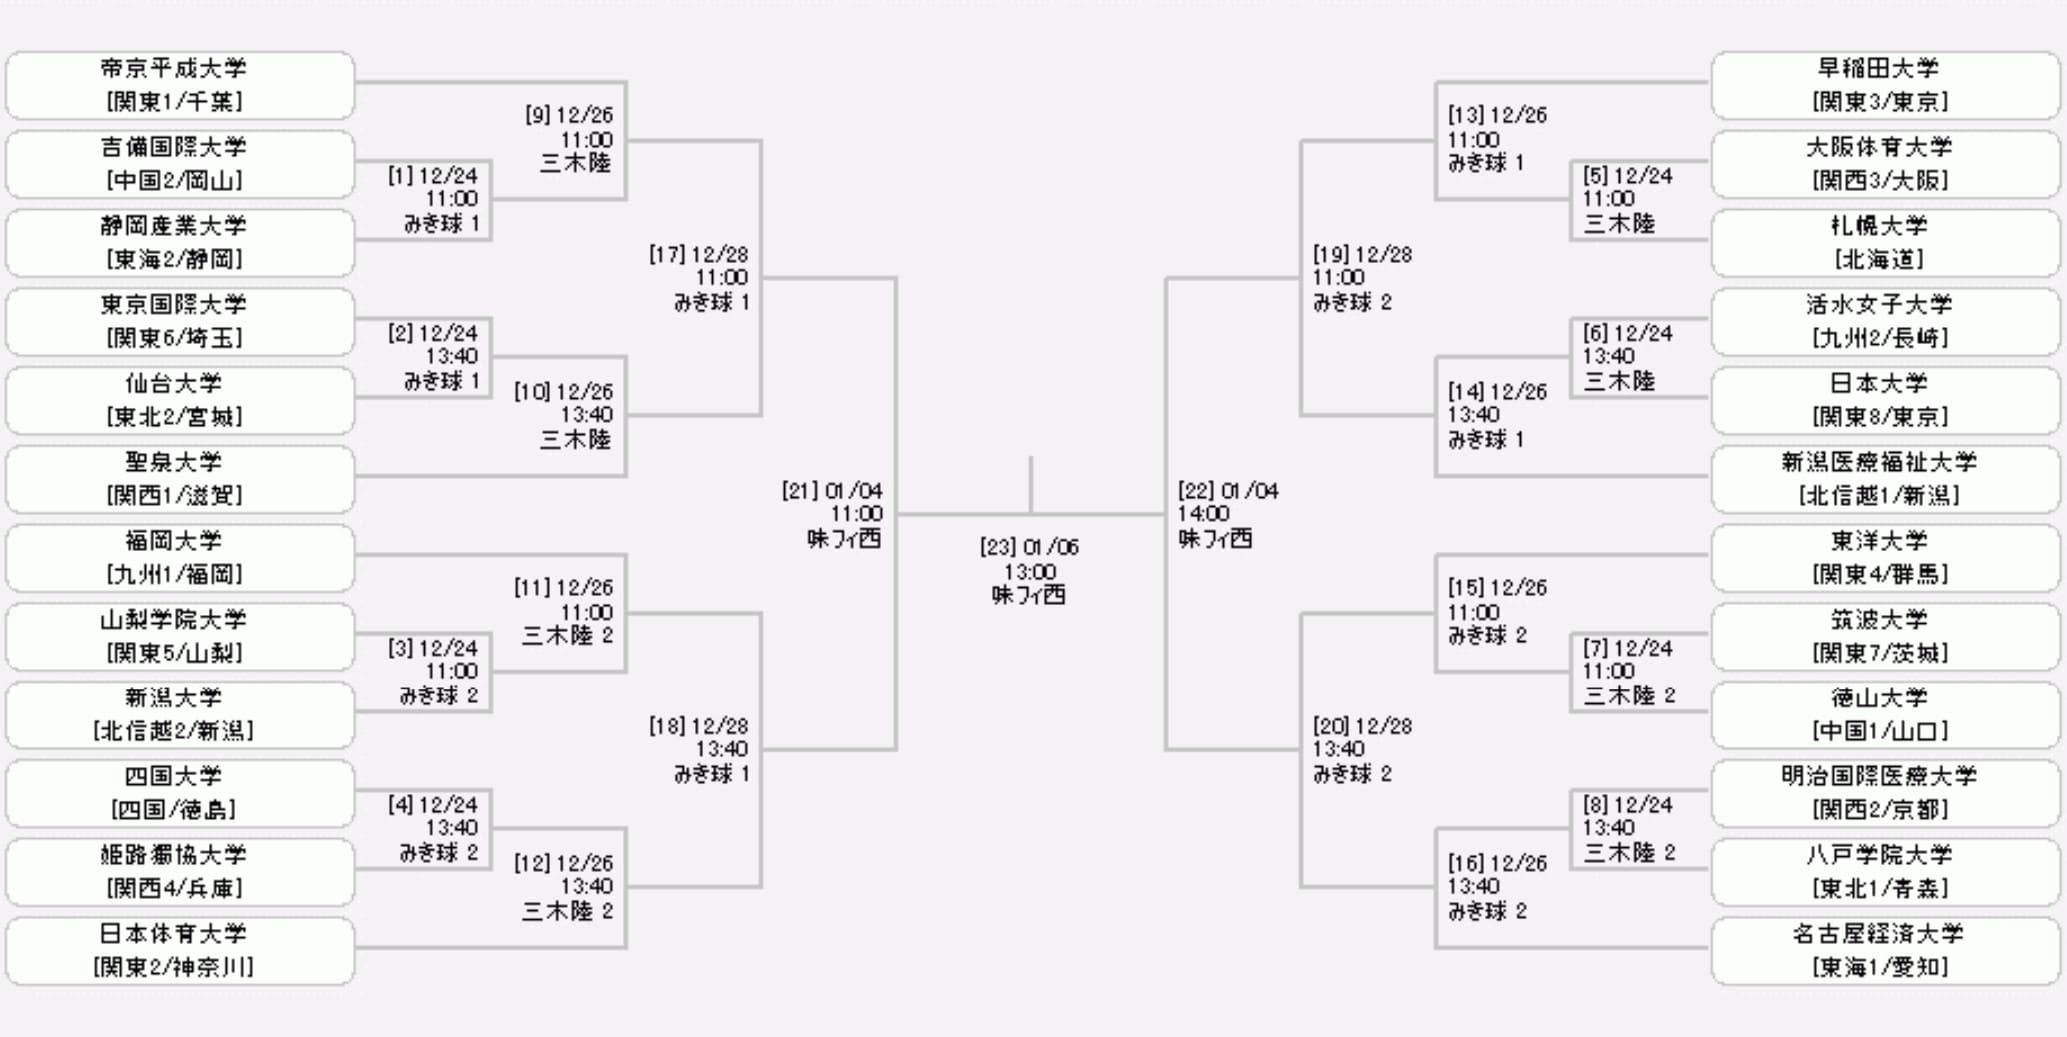 第30回全日本大学女子サッカー選手権大会_トーナメント表